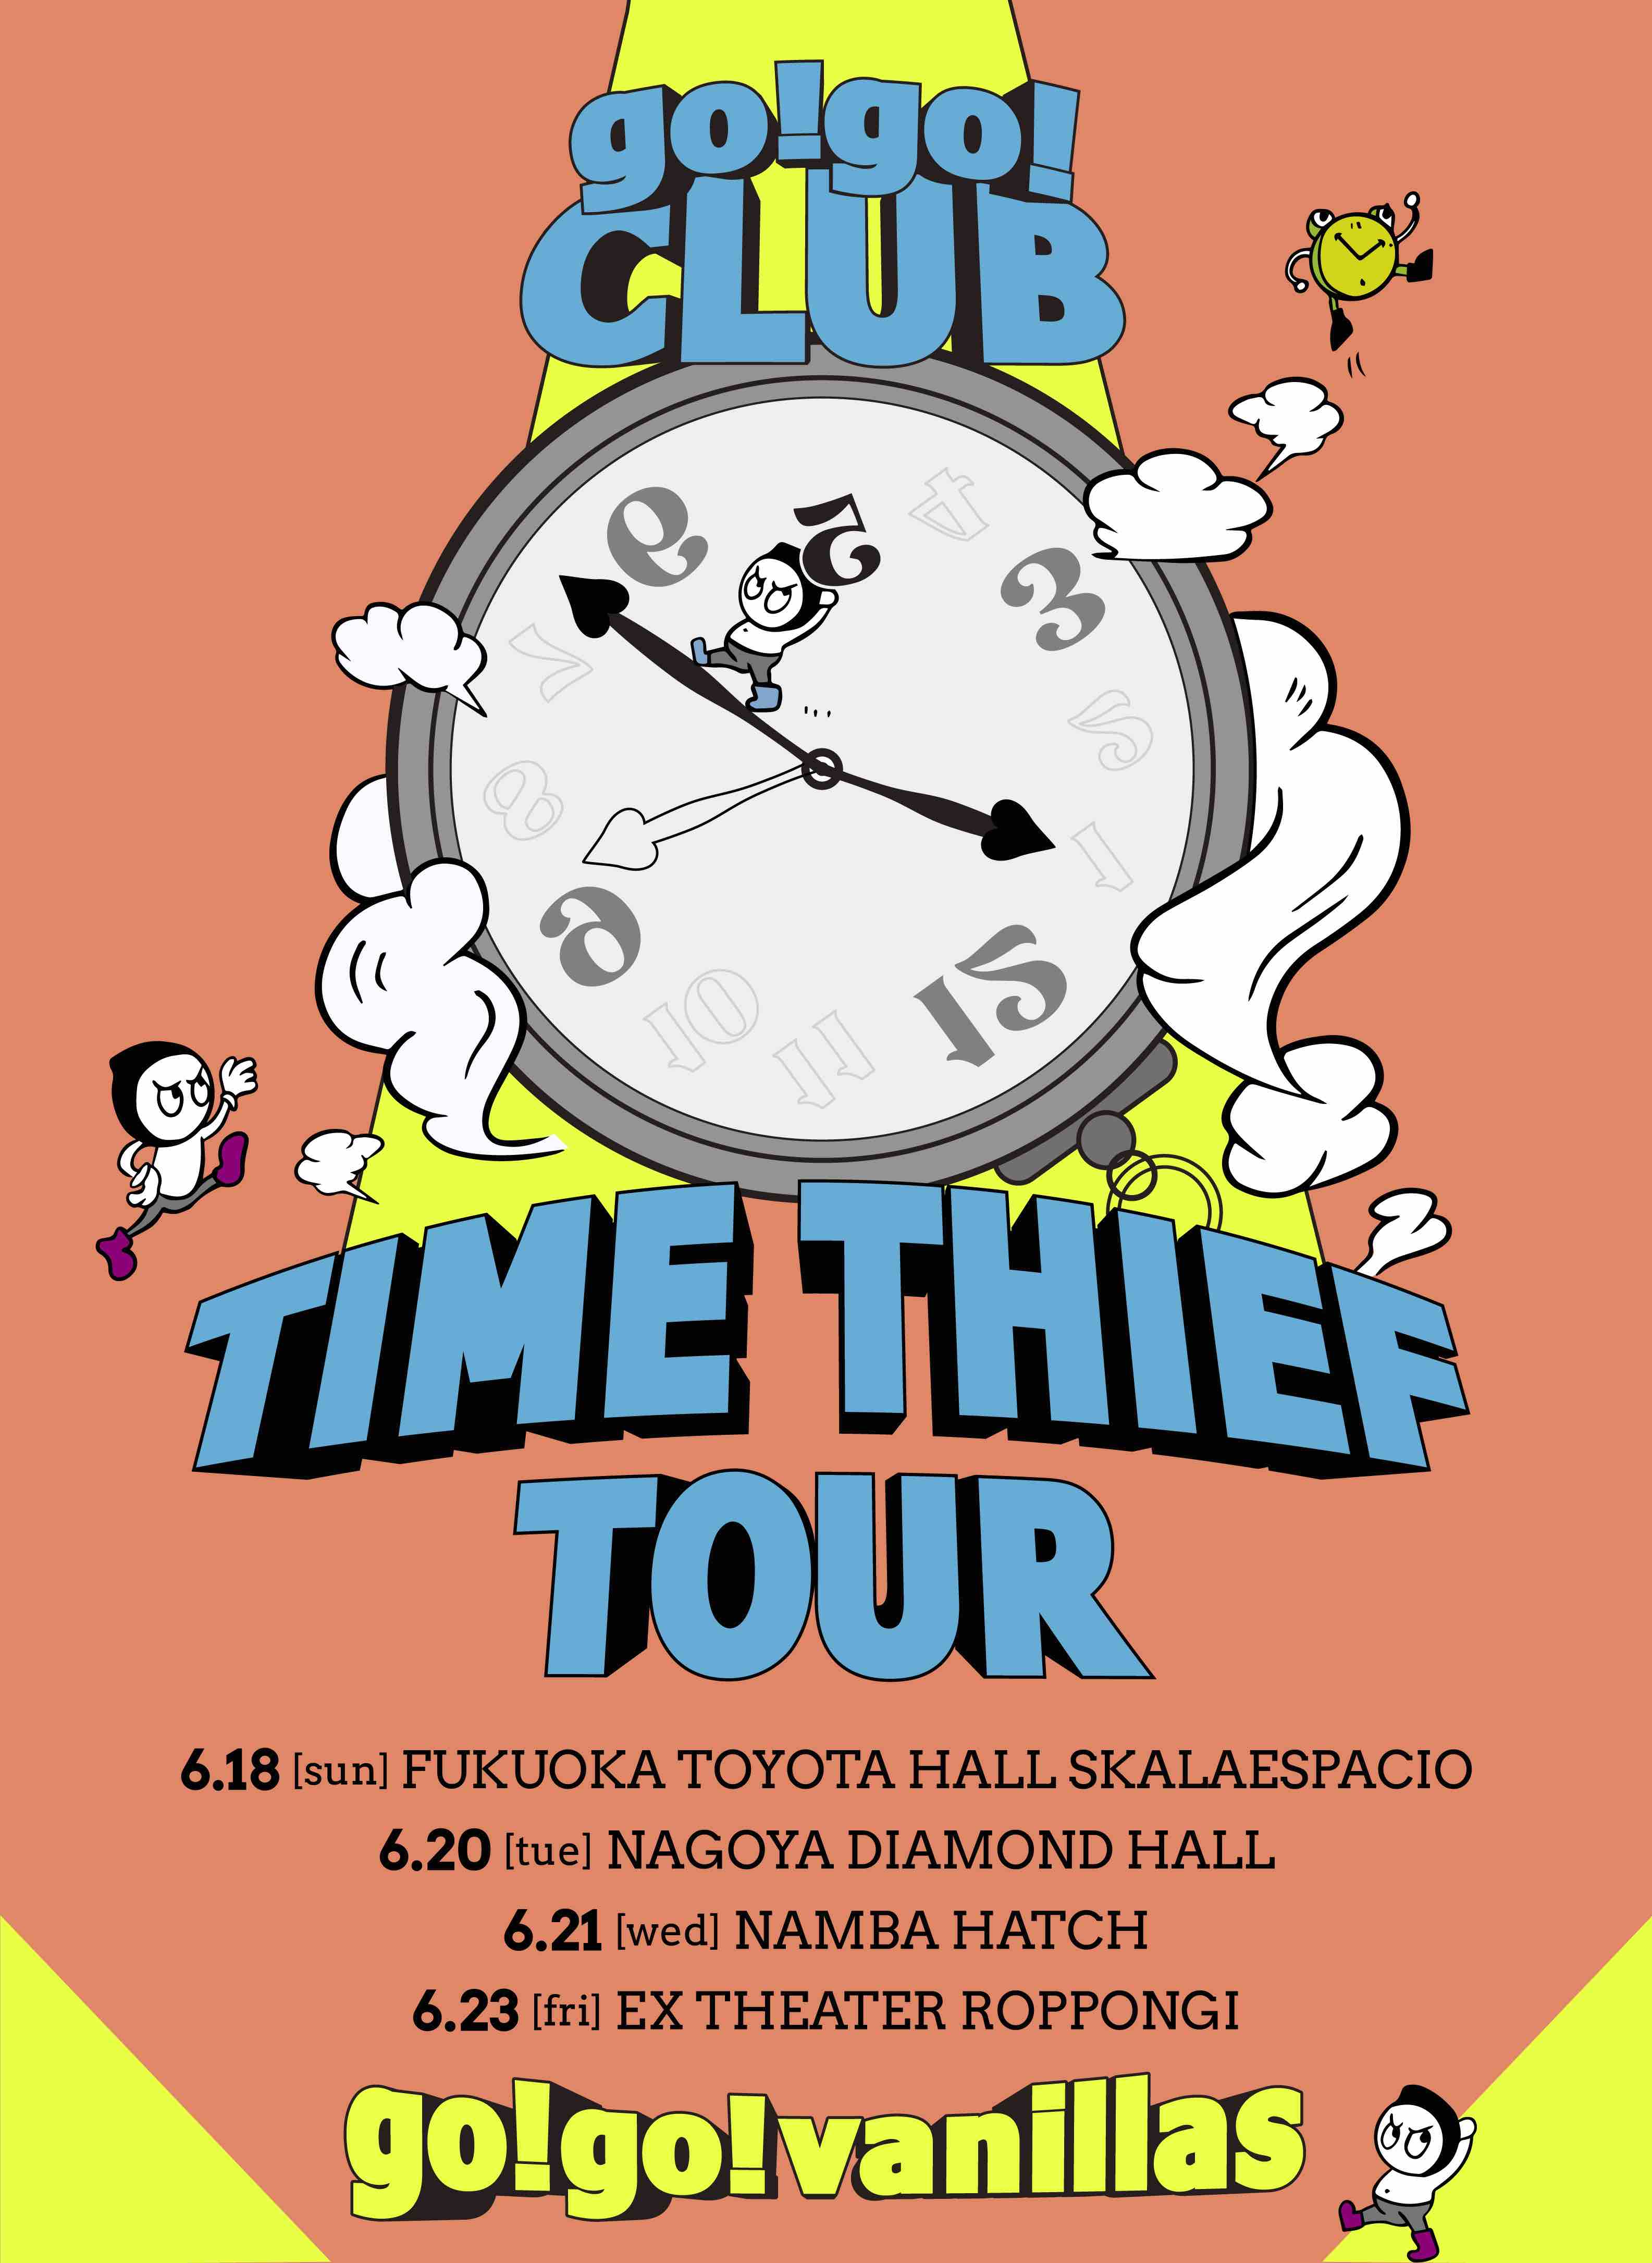 なんば Hatch <span class="live-title">go!go!CLUB 会員限定ライブ「TIME THIEF TOUR」</span>